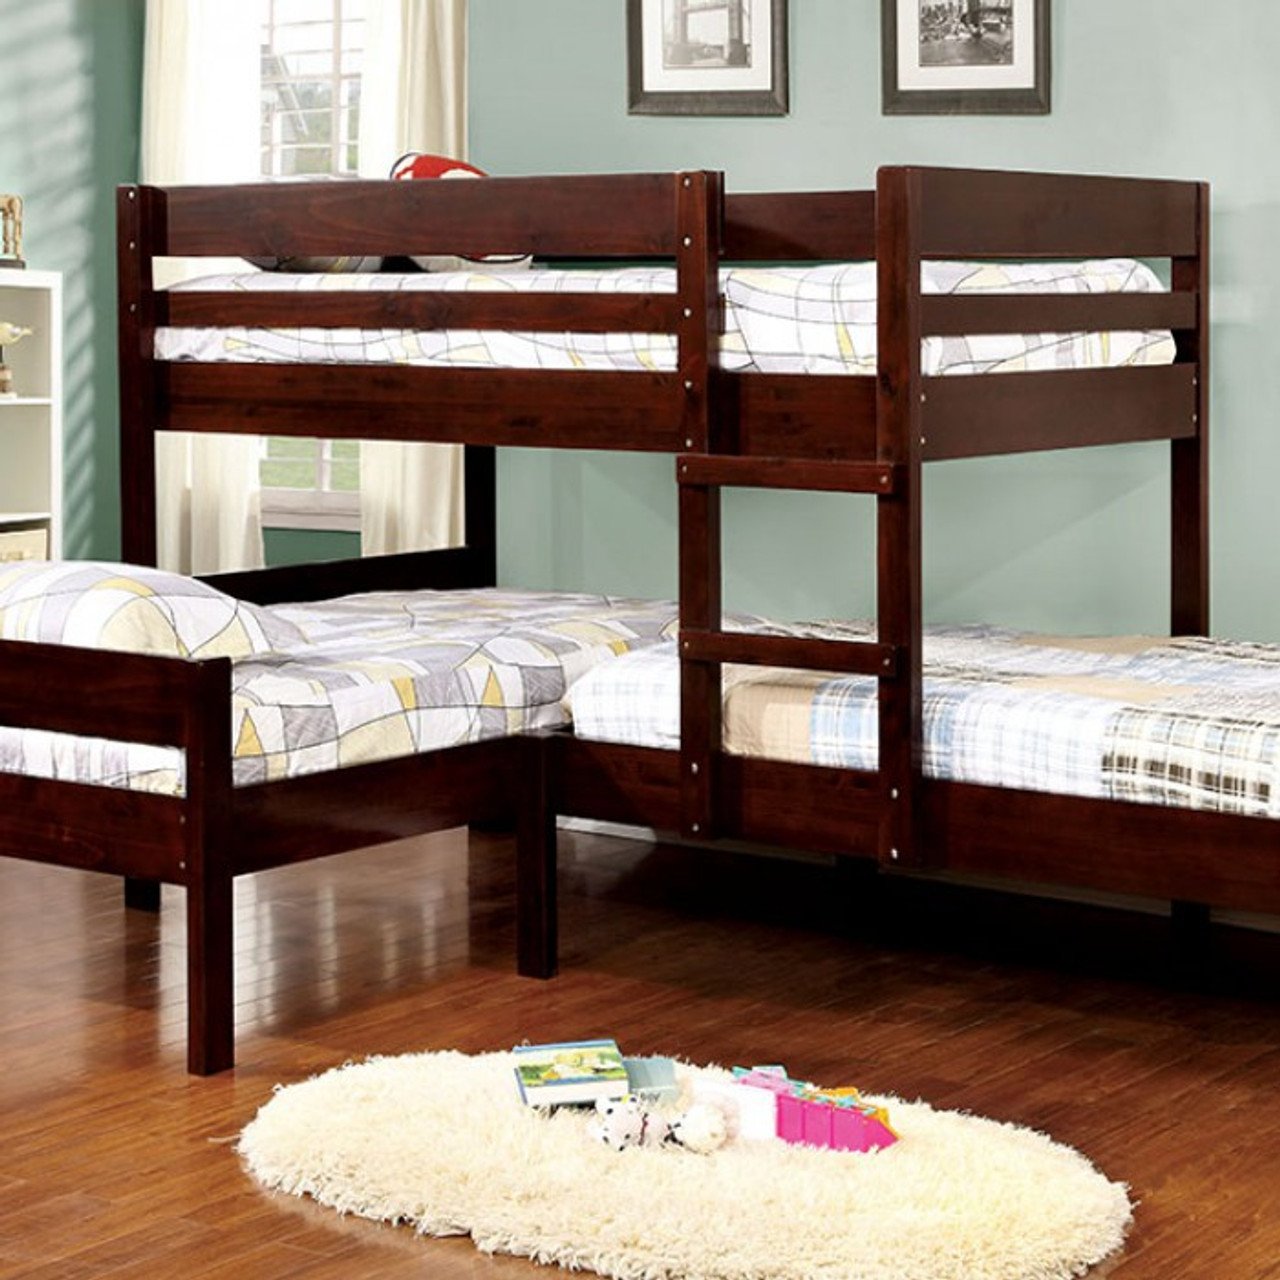 двухъярусная кровать на троих детей